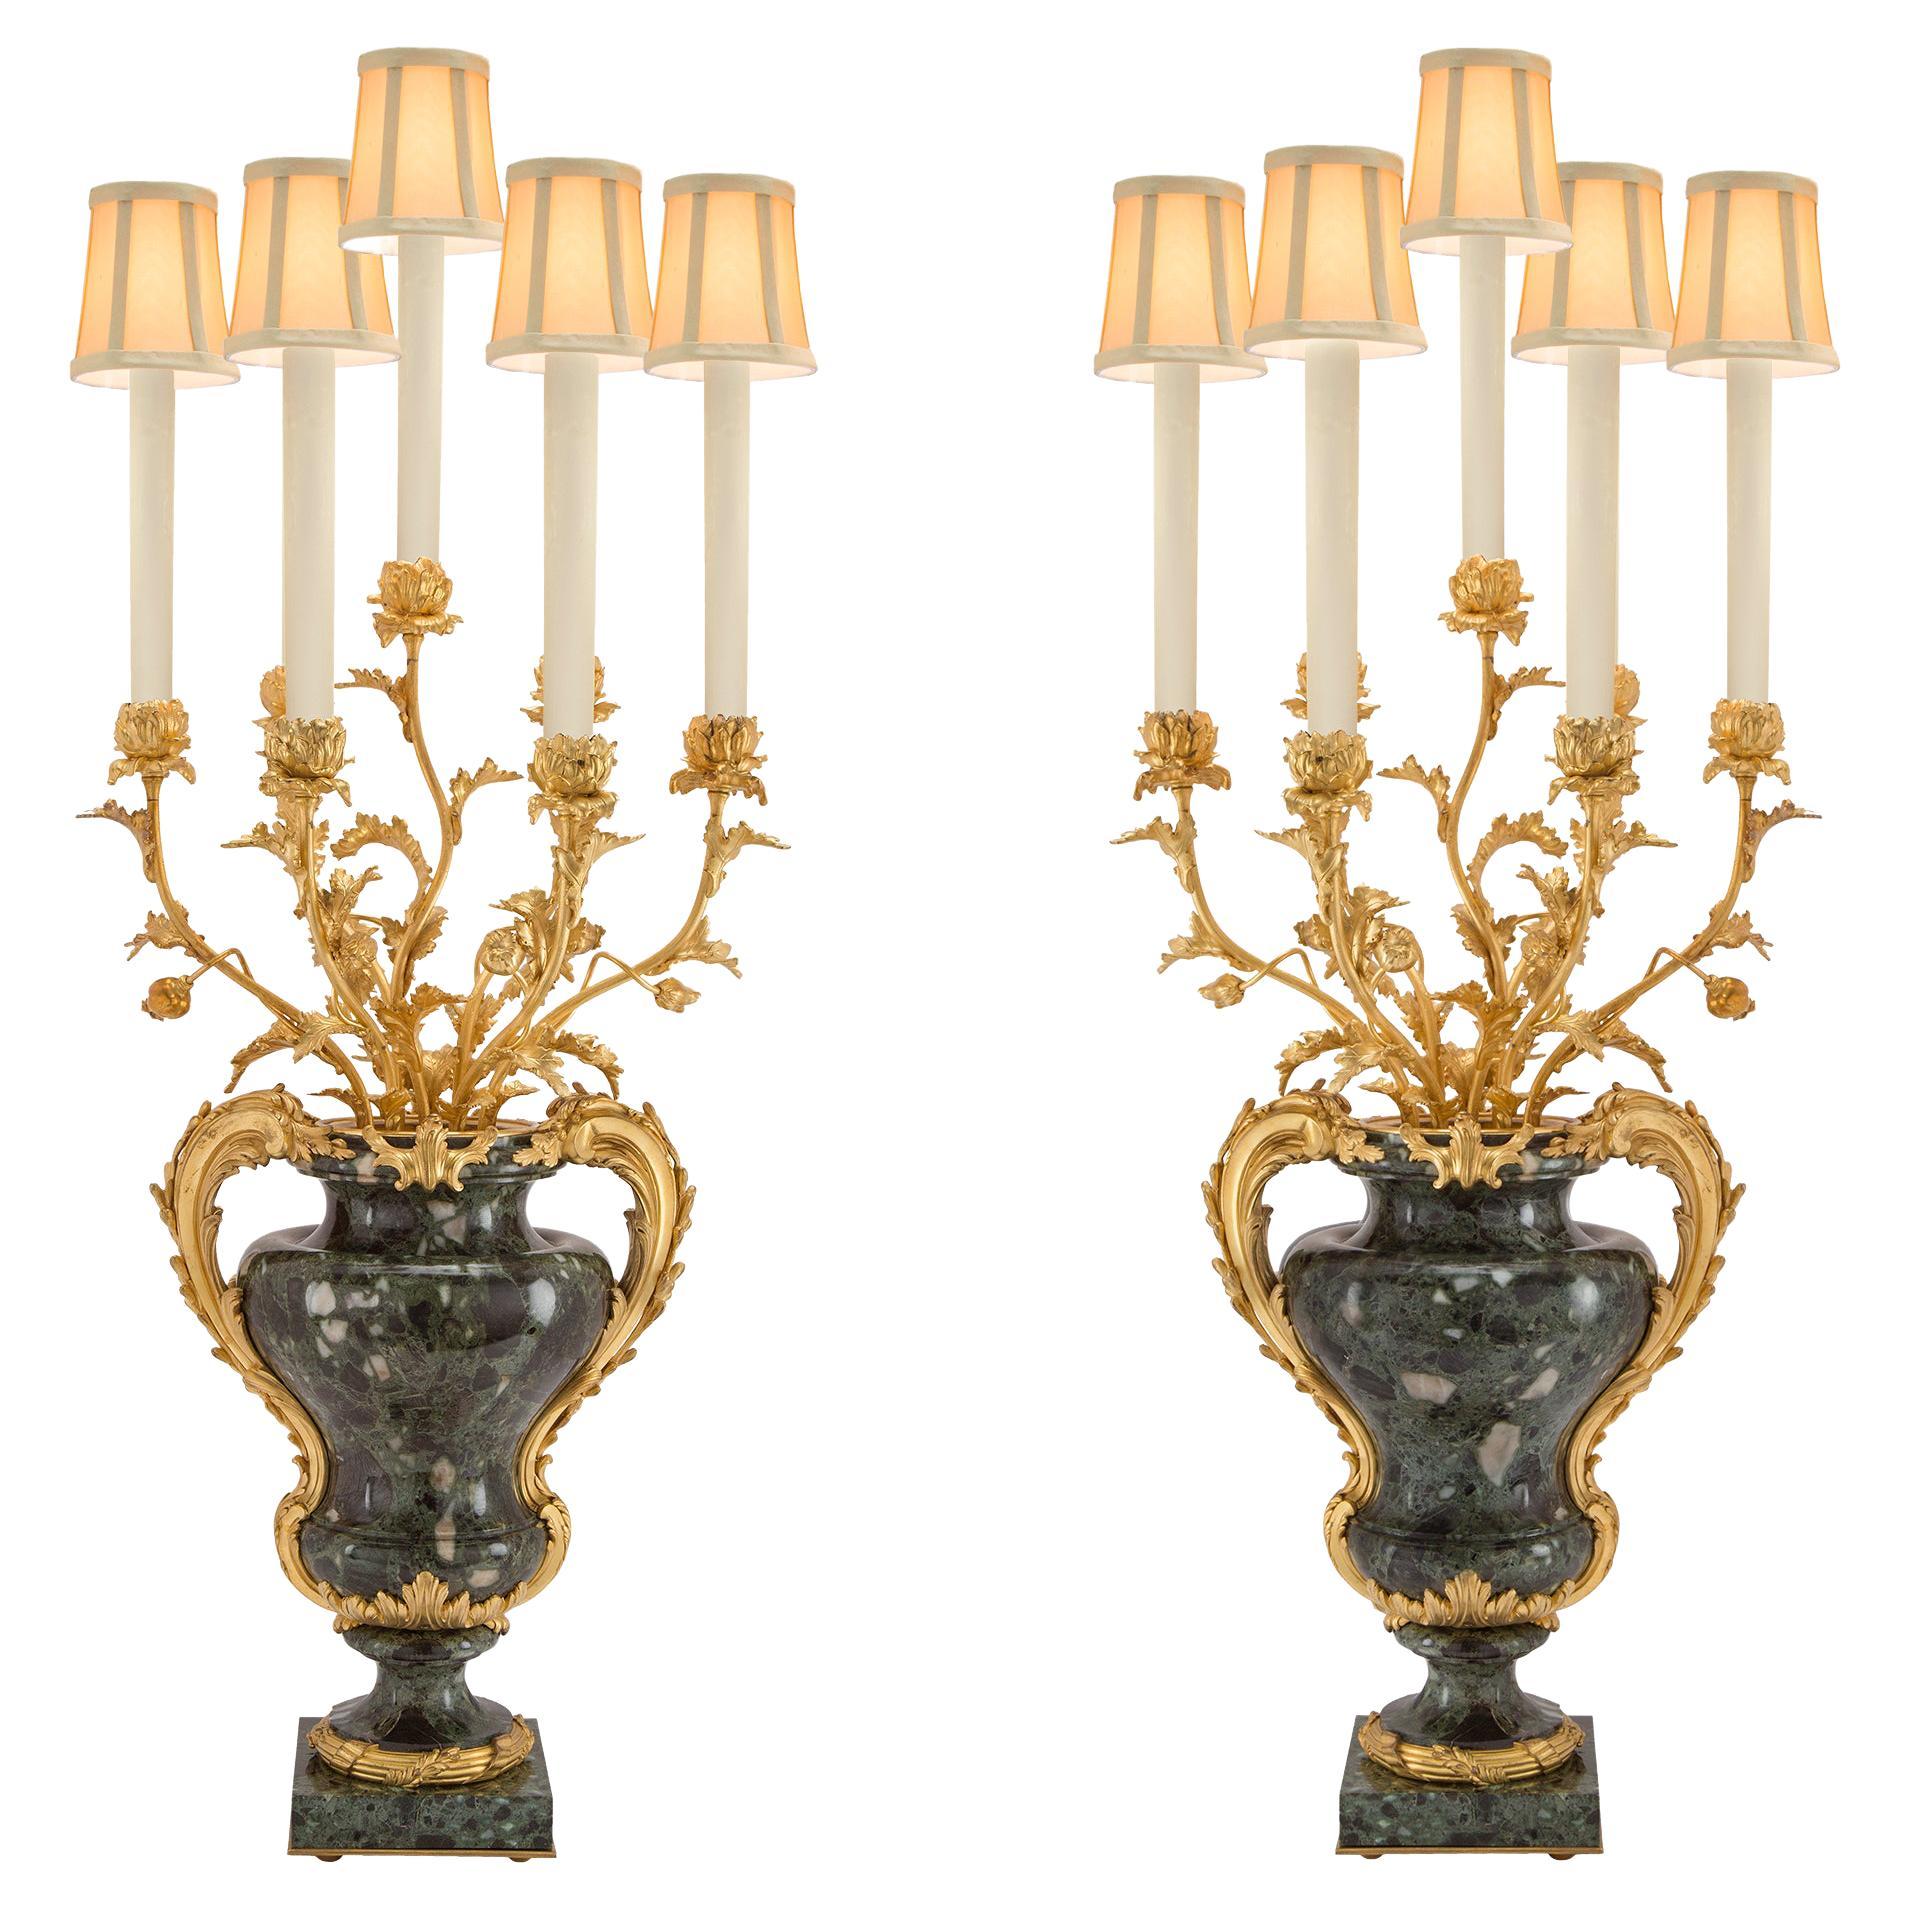 Paire de candélabres français montés de style Louis XVI du milieu du XIXe siècle